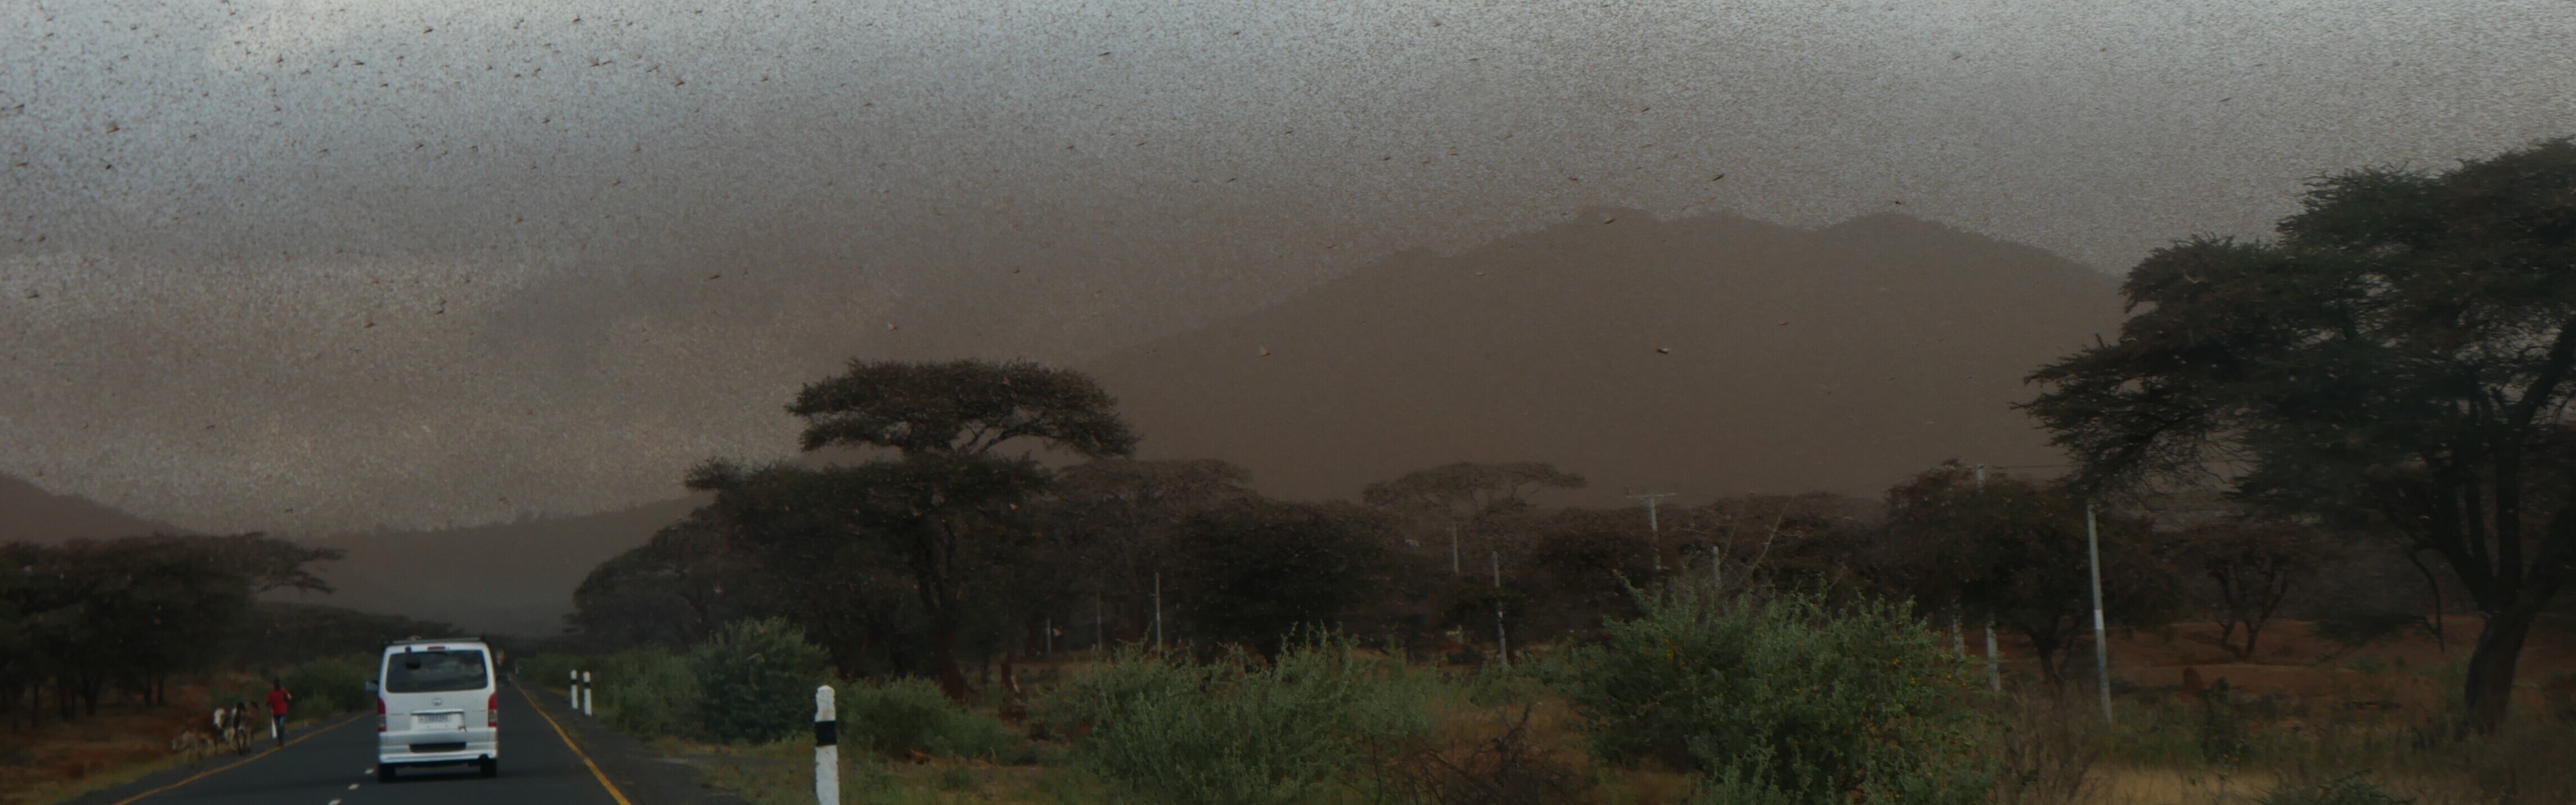 Heuschreckenplage in Äthiopien: Ein riesiger Schwarm verdunkelt den Himmel